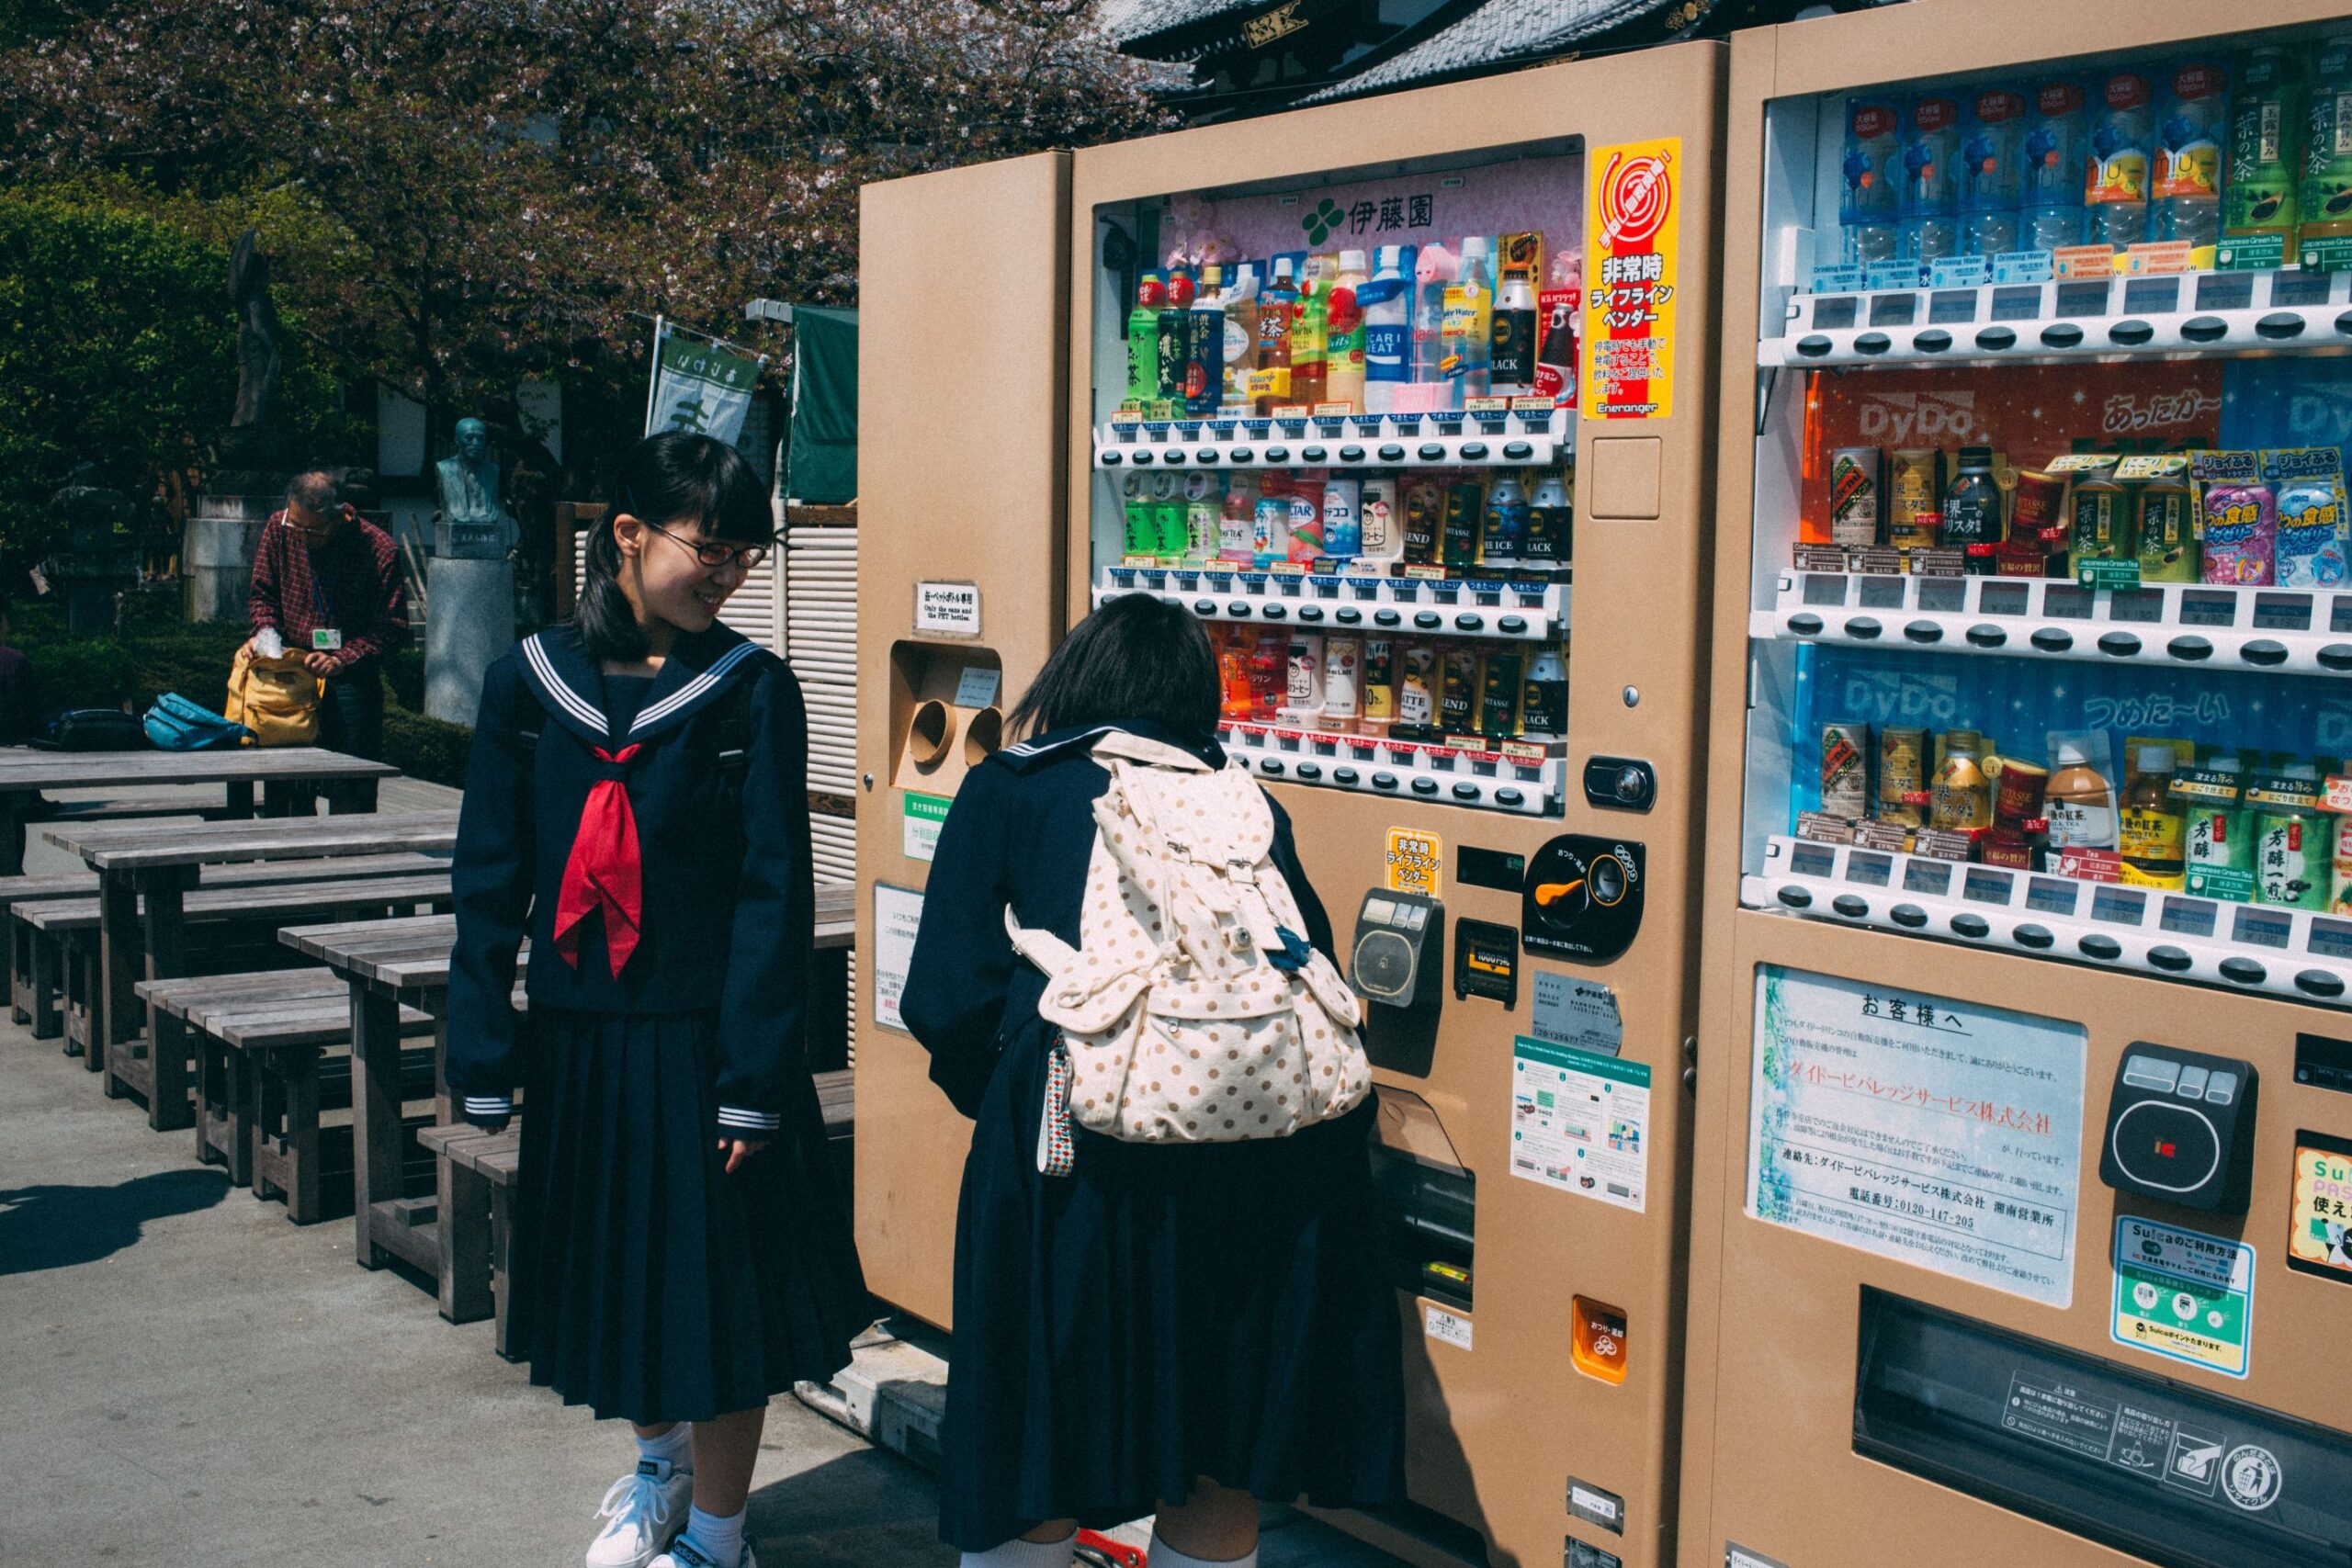 outdoor vending machines